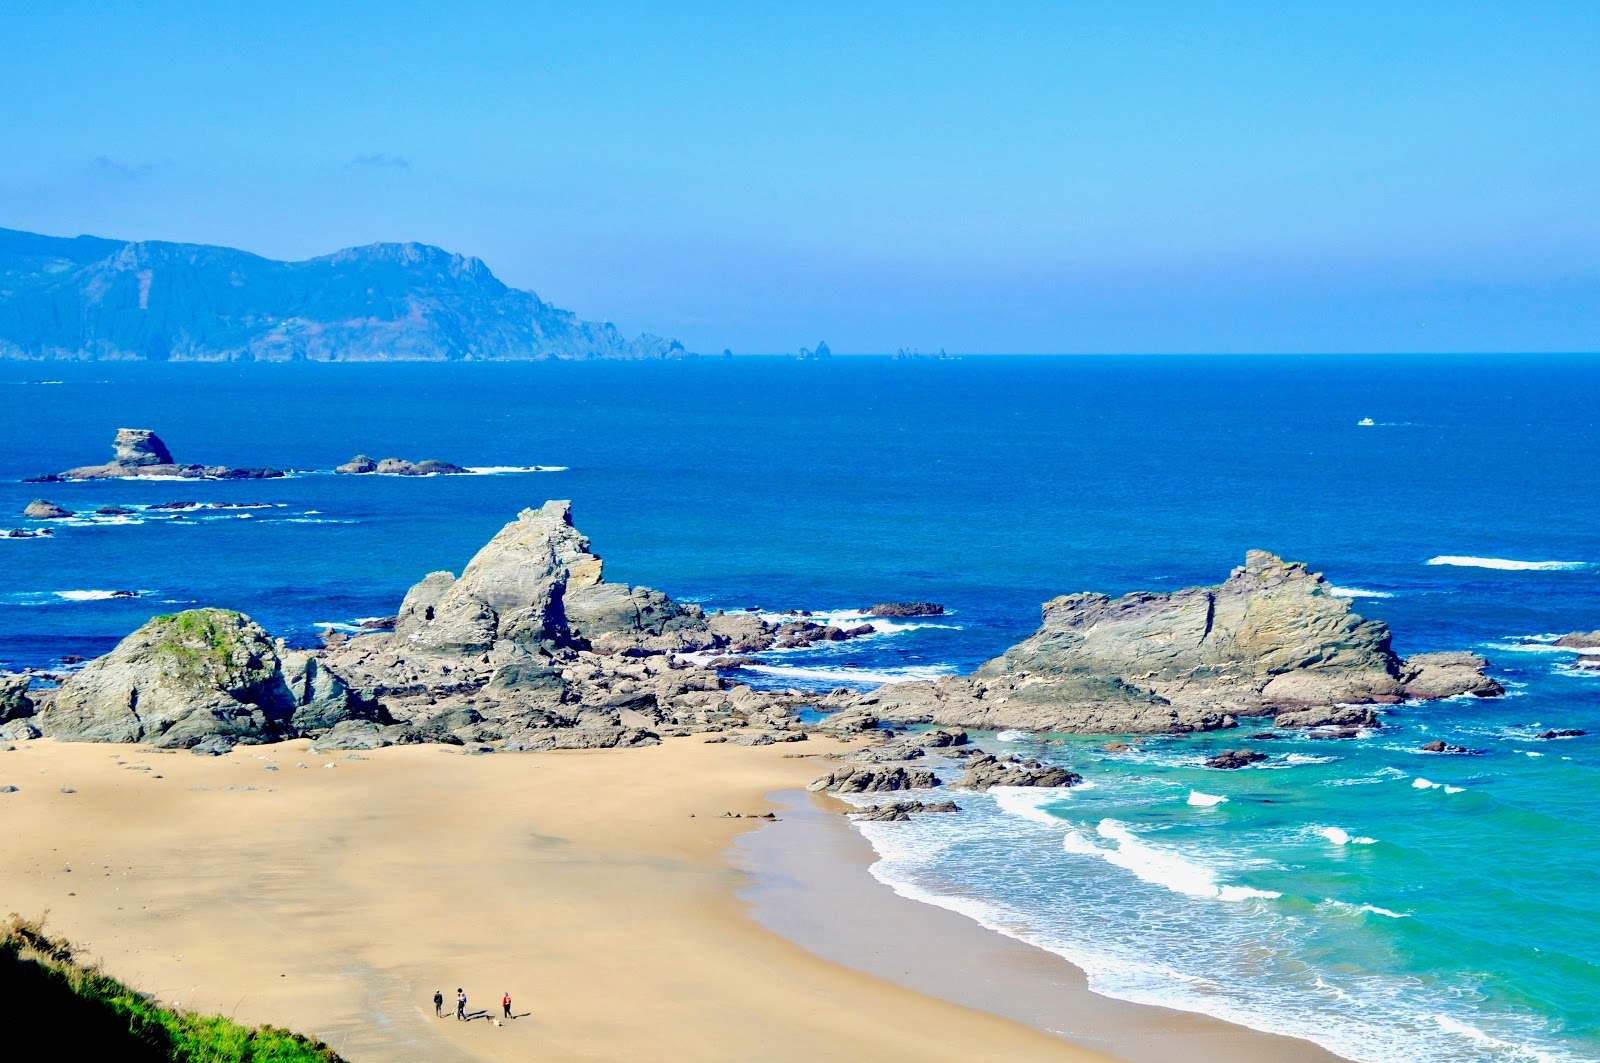 Fotografija Praia Fabrega nahaja se v naravnem okolju